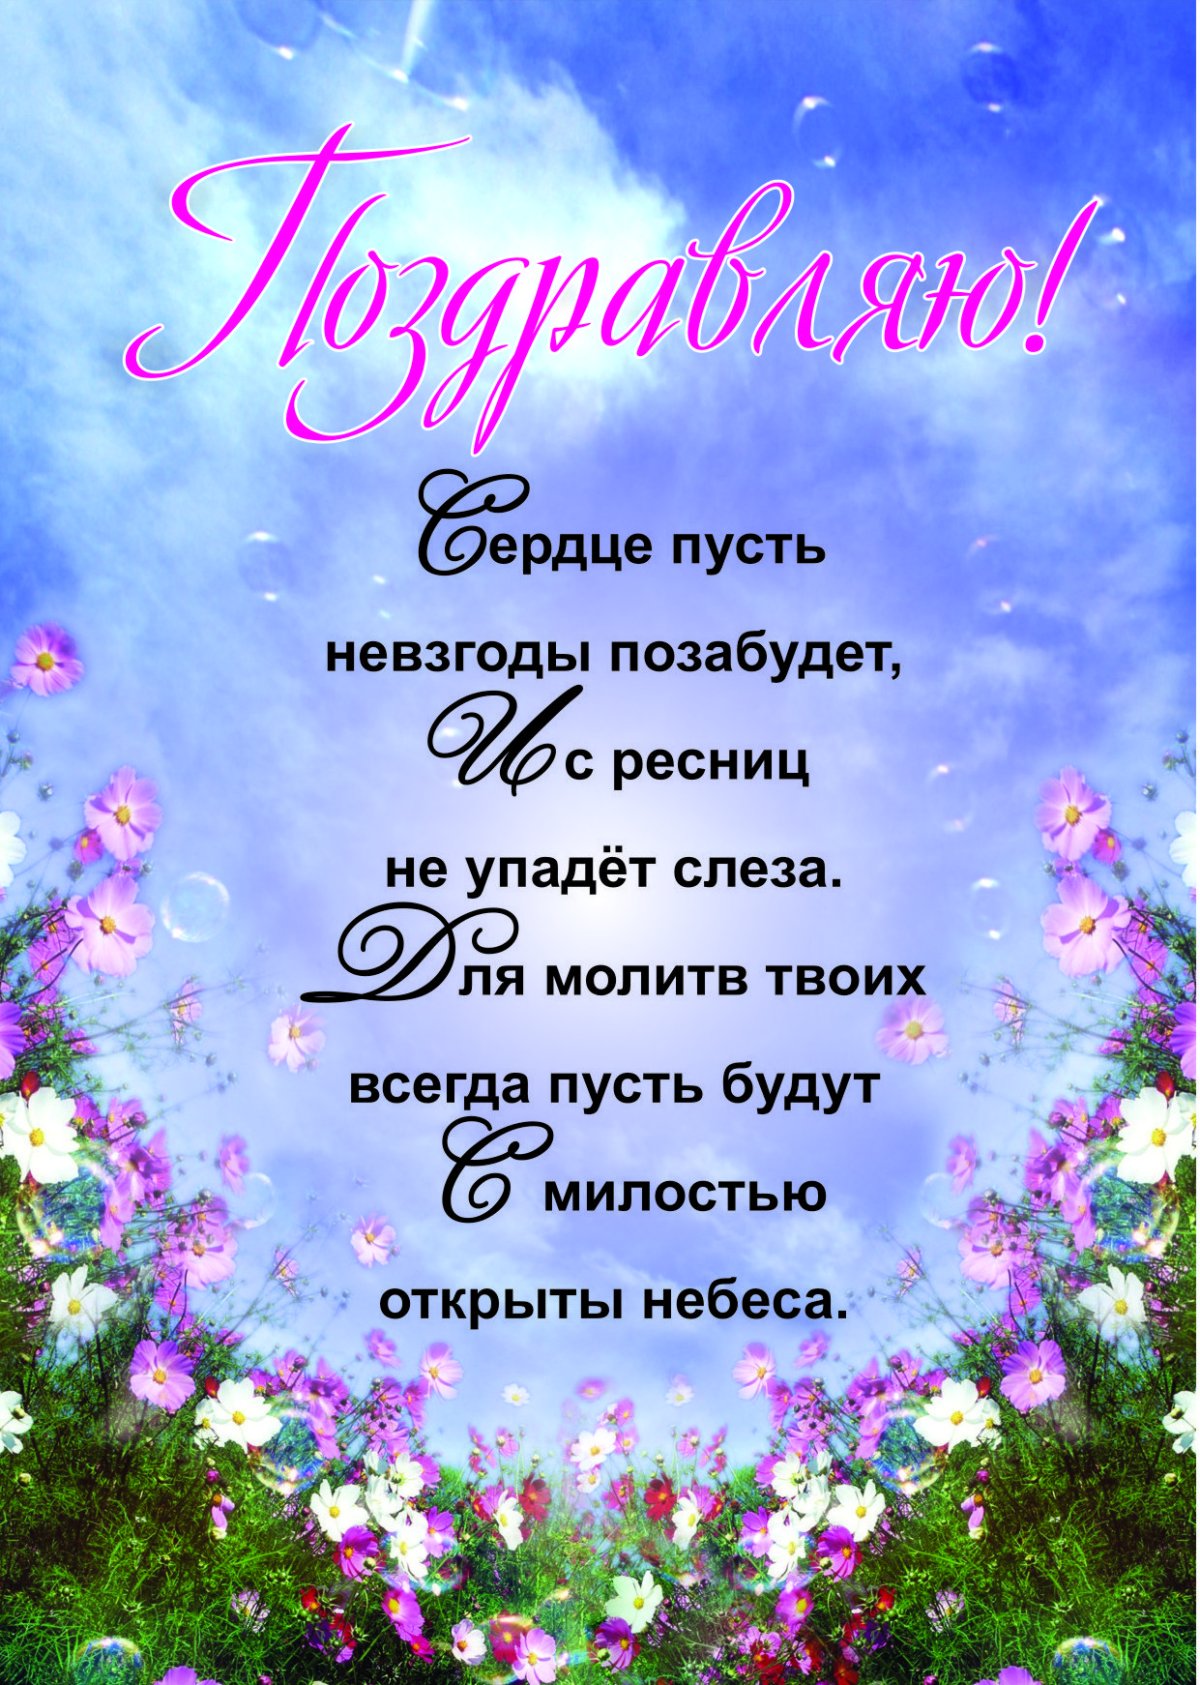 Поздравления и пожелания с днем рождения подруге православные